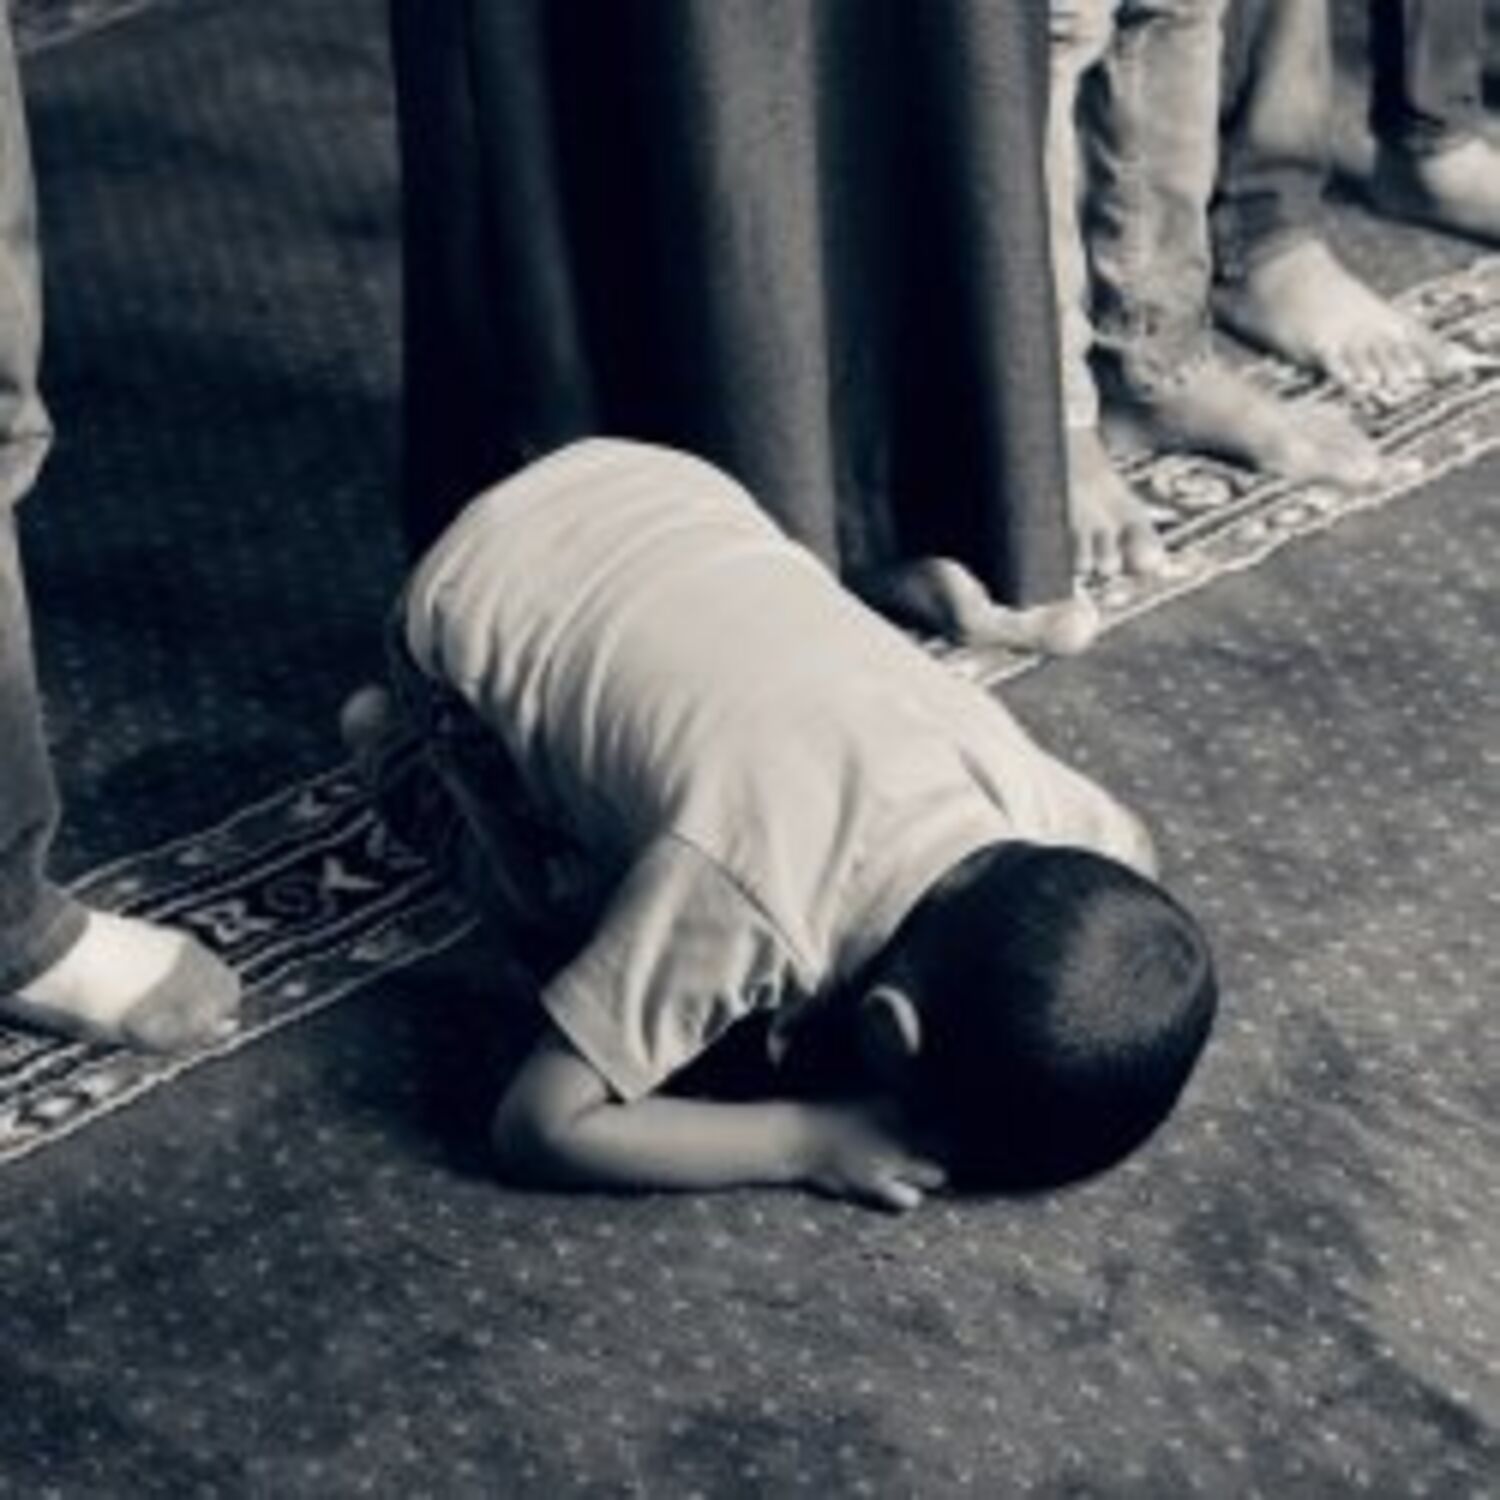 L'Islam au Présent du 13-03-2020 : La superstition - Ismaïl Mounir